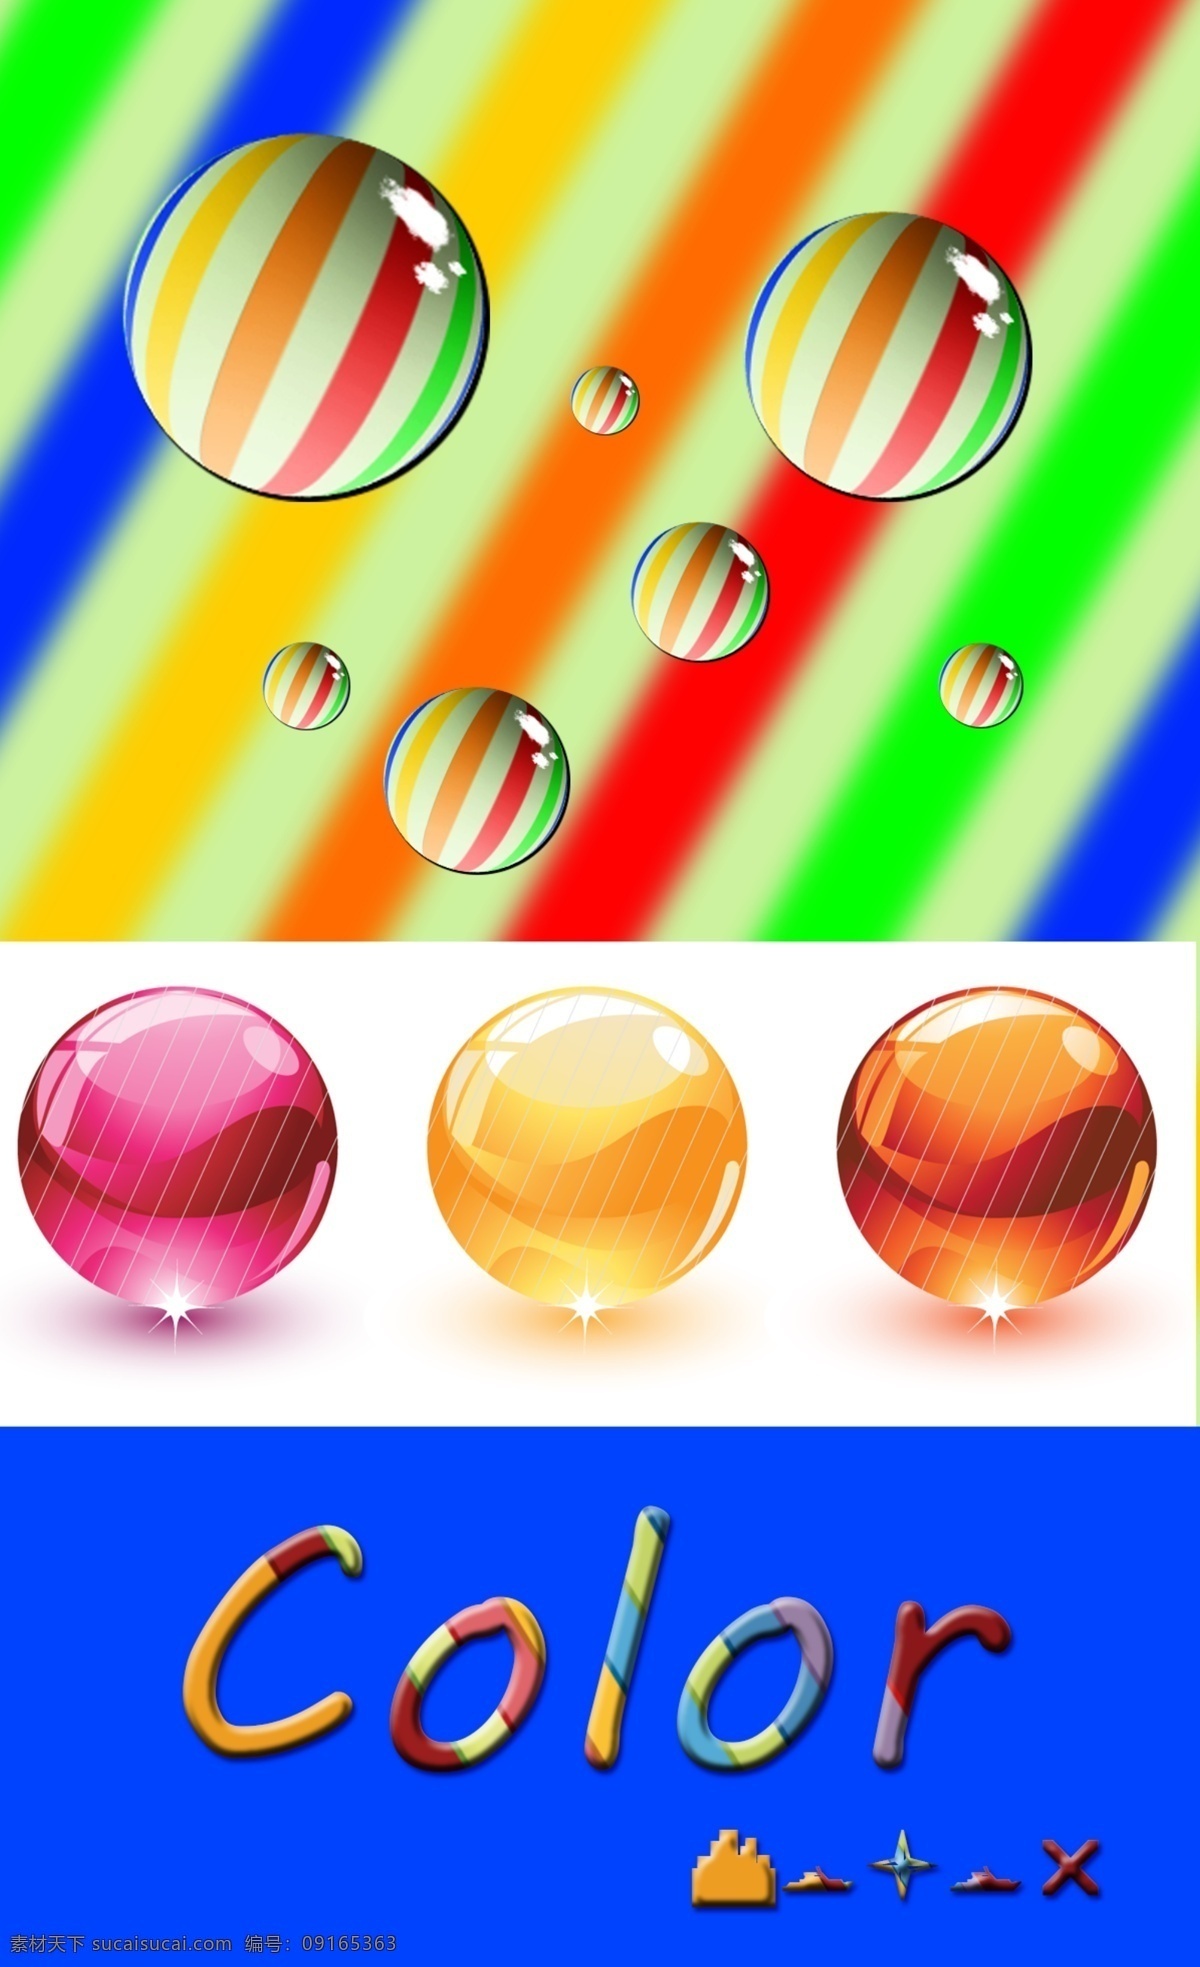 绚丽玻璃球 圆形球体 立体 艺术字 彩色条纹字体 color 彩虹条 球体 精通 特效 质感 制作 水晶 蓝色